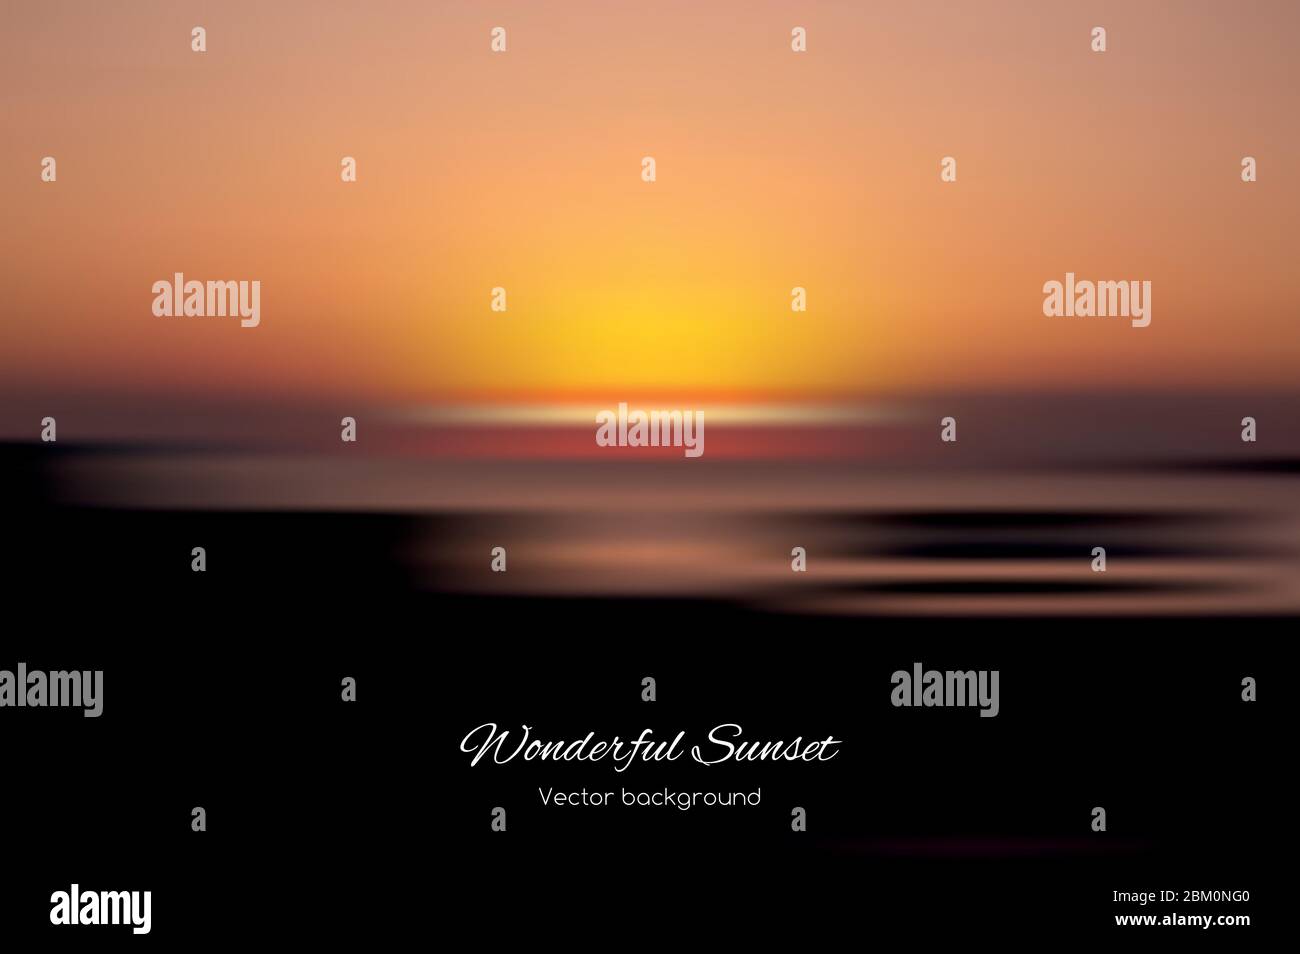 Magnifique fond vectoriel de coucher de soleil Illustration de Vecteur